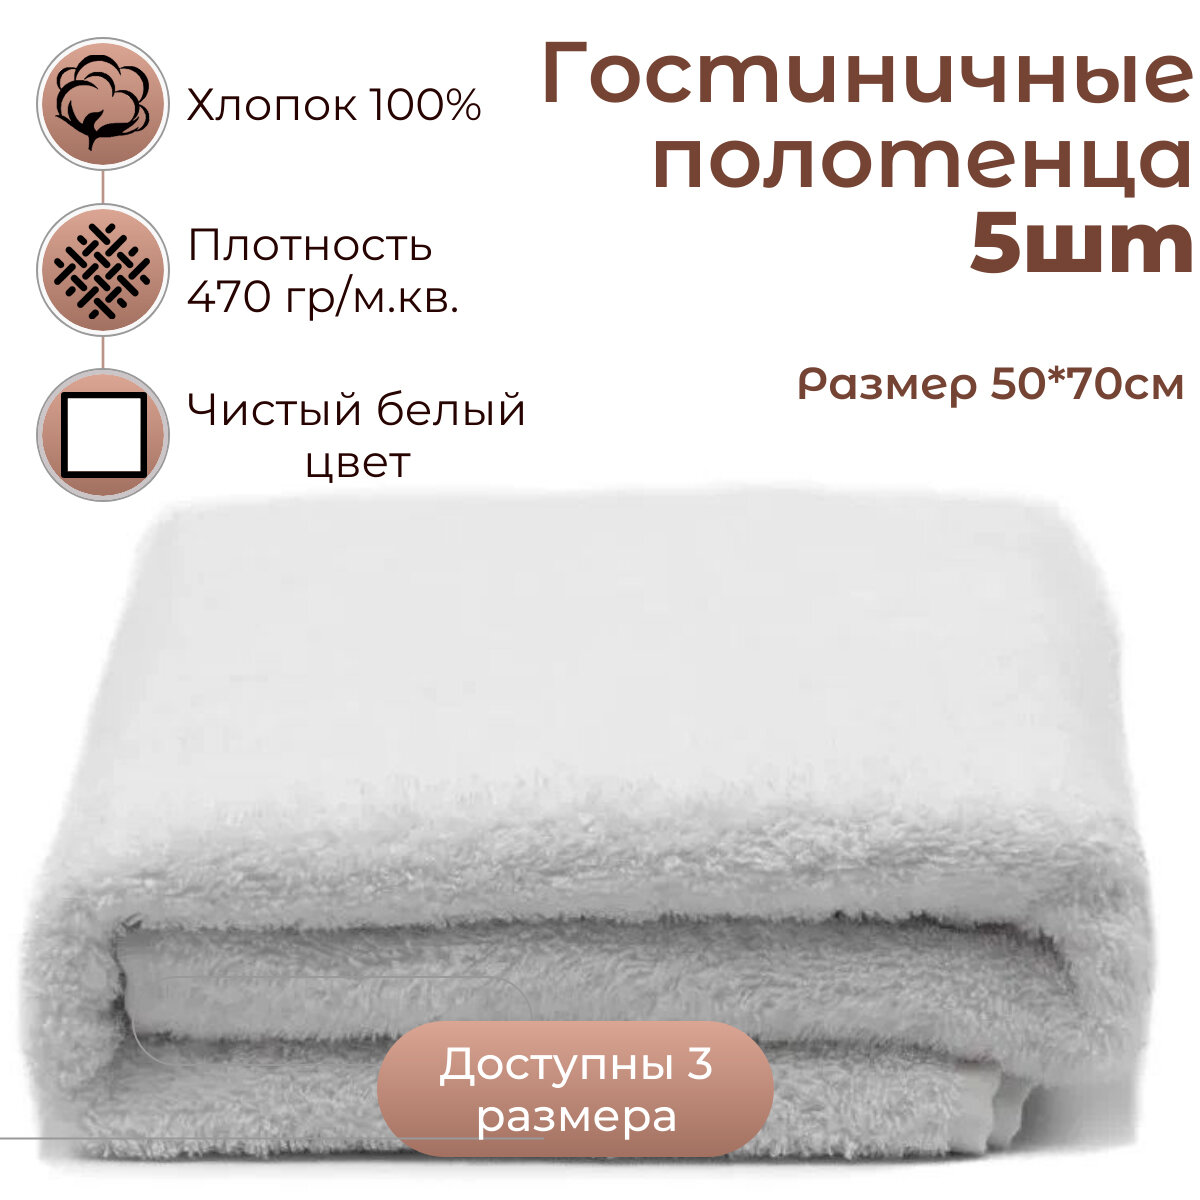 5шт - Полотенце махровое гостиничное 50*70см (470гр/м2), белое, 100%хлопок